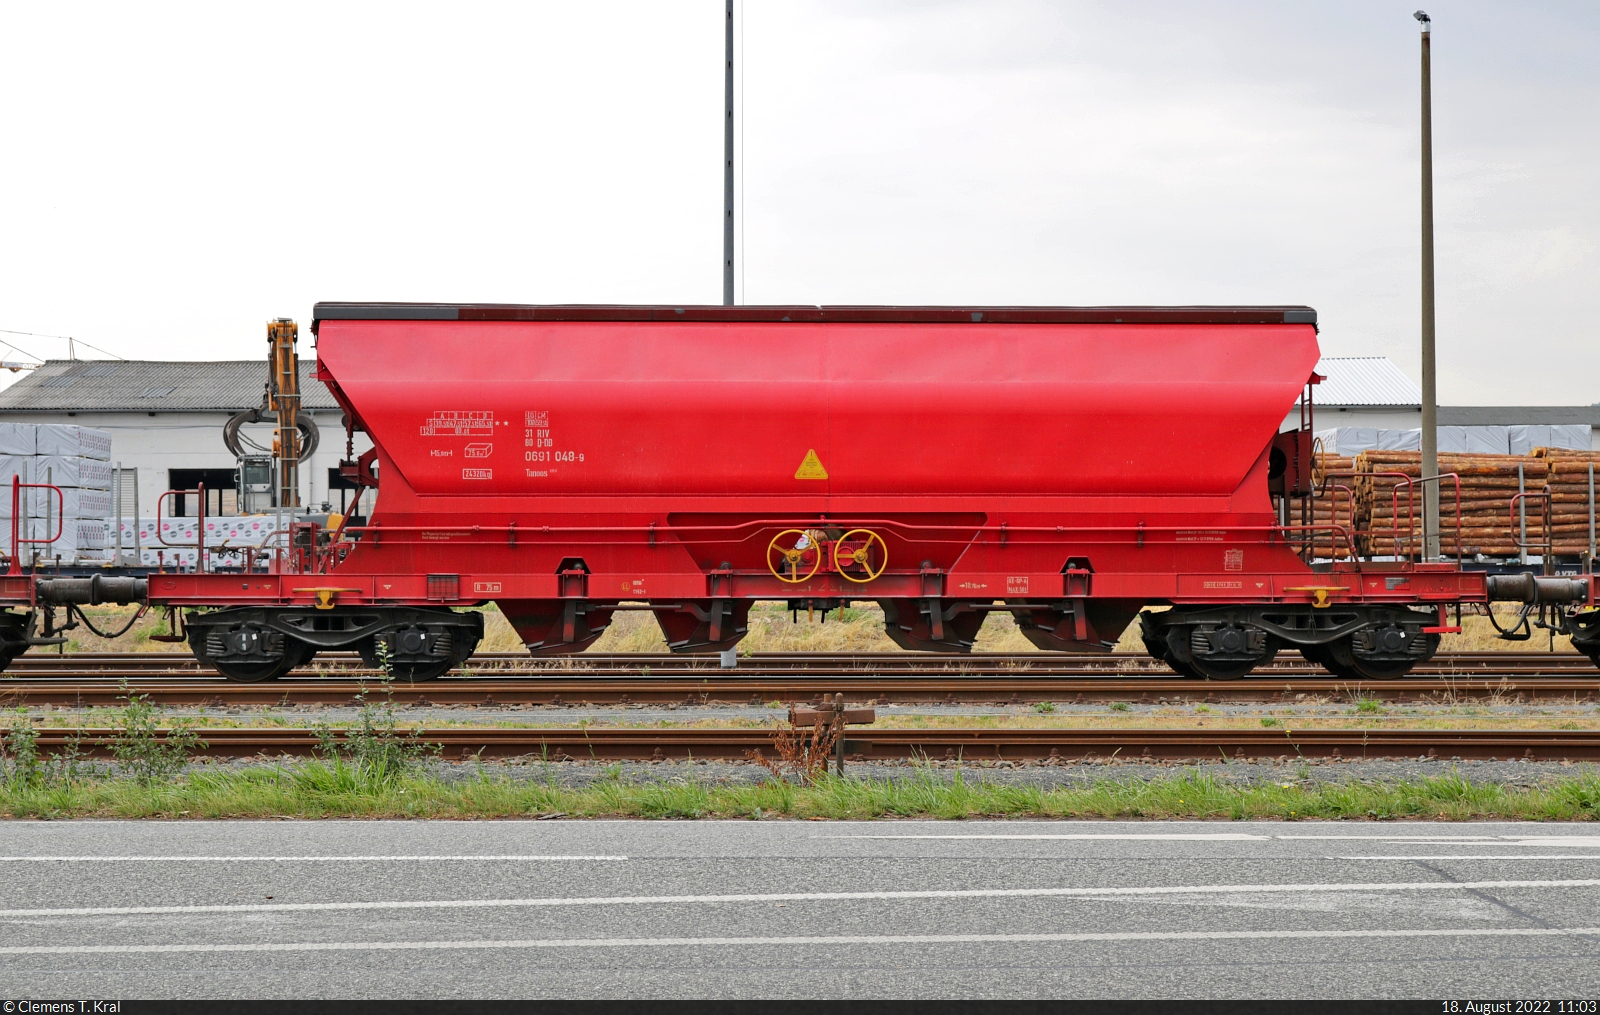 Mit dem Fahrrad von Kassel nach Halle (Saale) | Tag 4 Berga-Kelbra–Riestedt
Güterverladung in Rottleberode

Einer von etlichen vierachsigen Schüttgutwagen mit schlagartiger Schwerkraft-Mittenentladung und mit der Bezeichnung  Tanoos <sup>896</sup>  (31 80 0691 048-9 D-DB), eingesetzt für den Gips-Transport im Bahnhof Rottleberode Süd.

🧰 DB Cargo
🕓 18.8.2022 | 11:03 Uhr